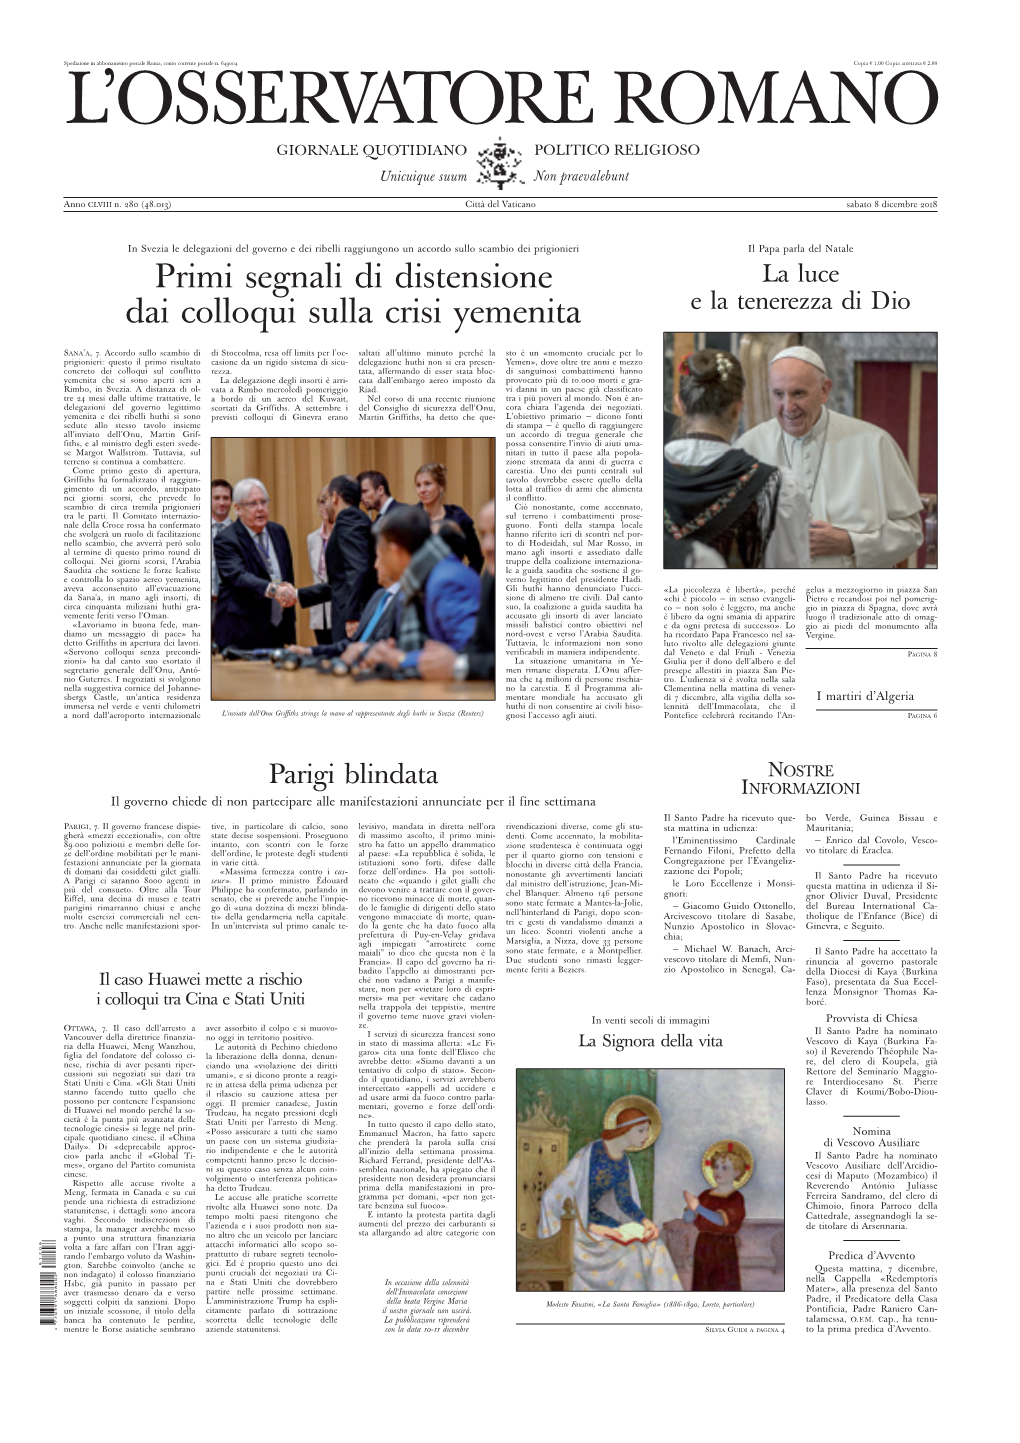 L'osservatore Romano, 8 Dicembre 2018